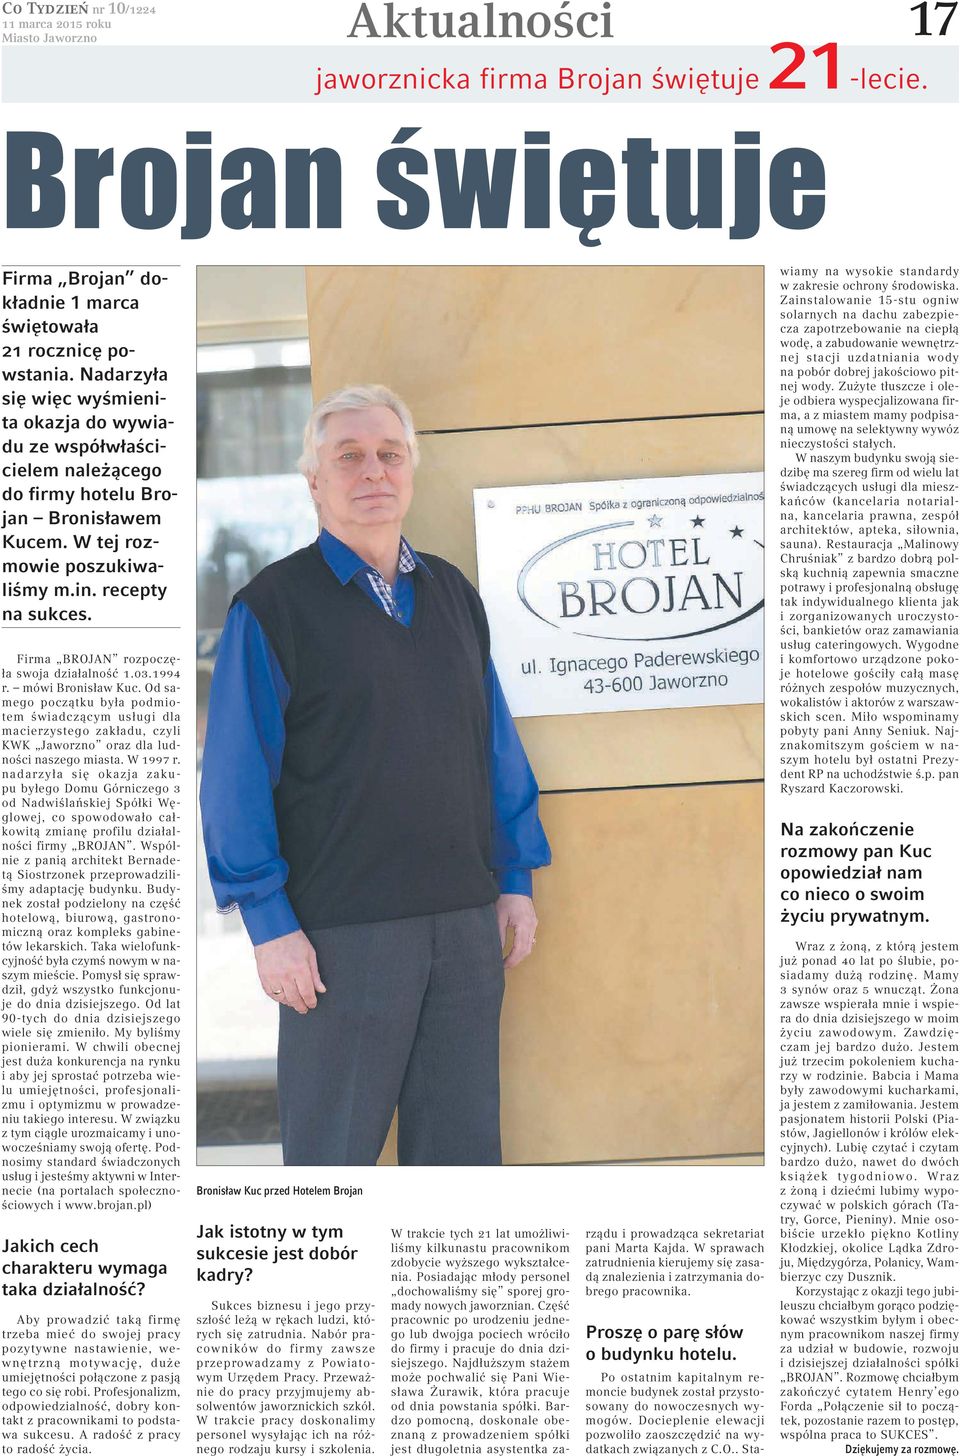 Firma BROJAN rozpoczęła swoja działalność 1.03.1994 r. mówi Bronisław Kuc.